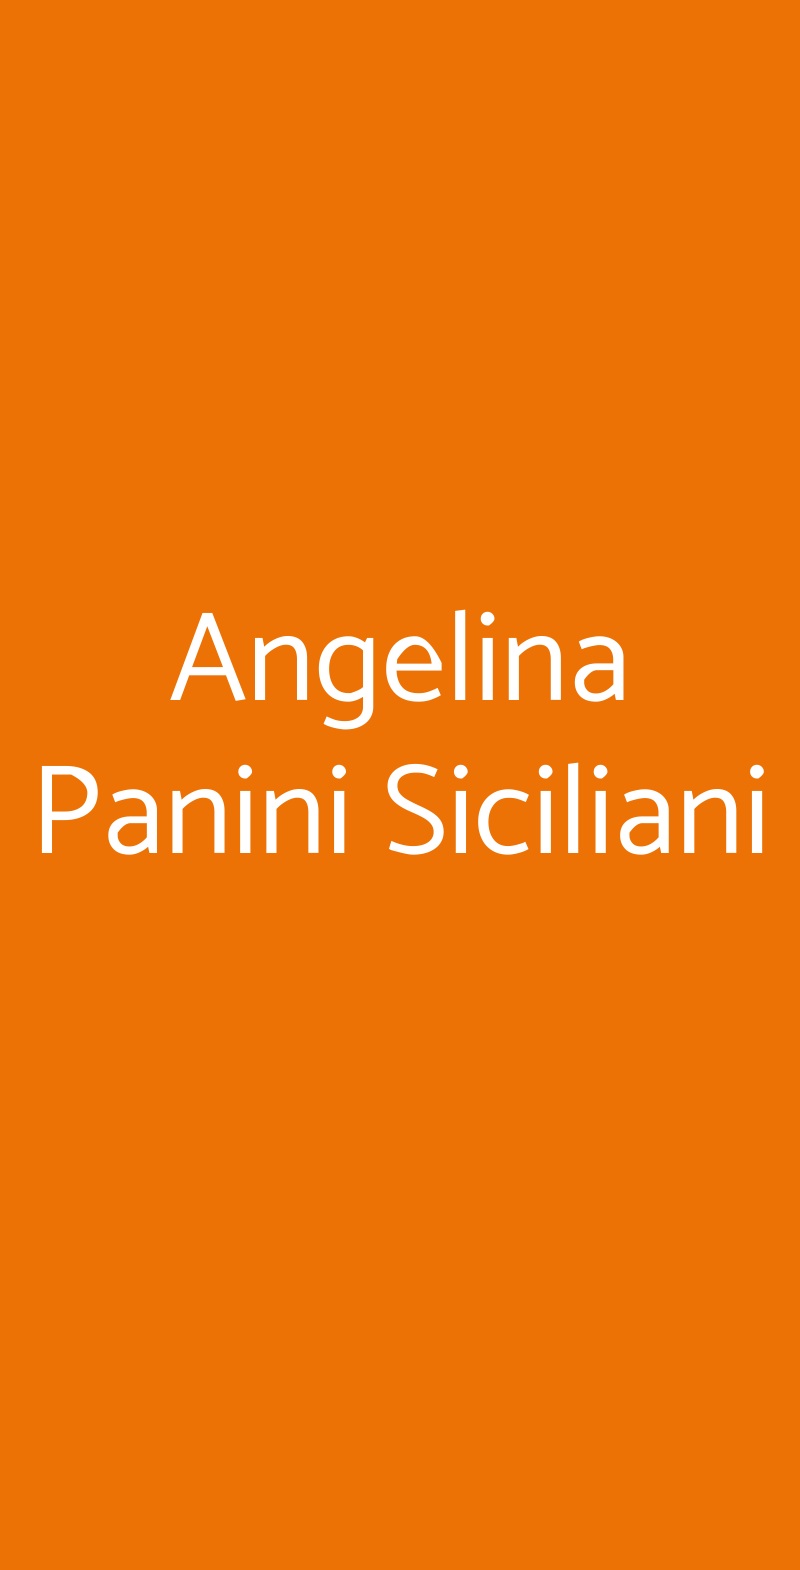 Angelina Panini Siciliani Siracusa menù 1 pagina